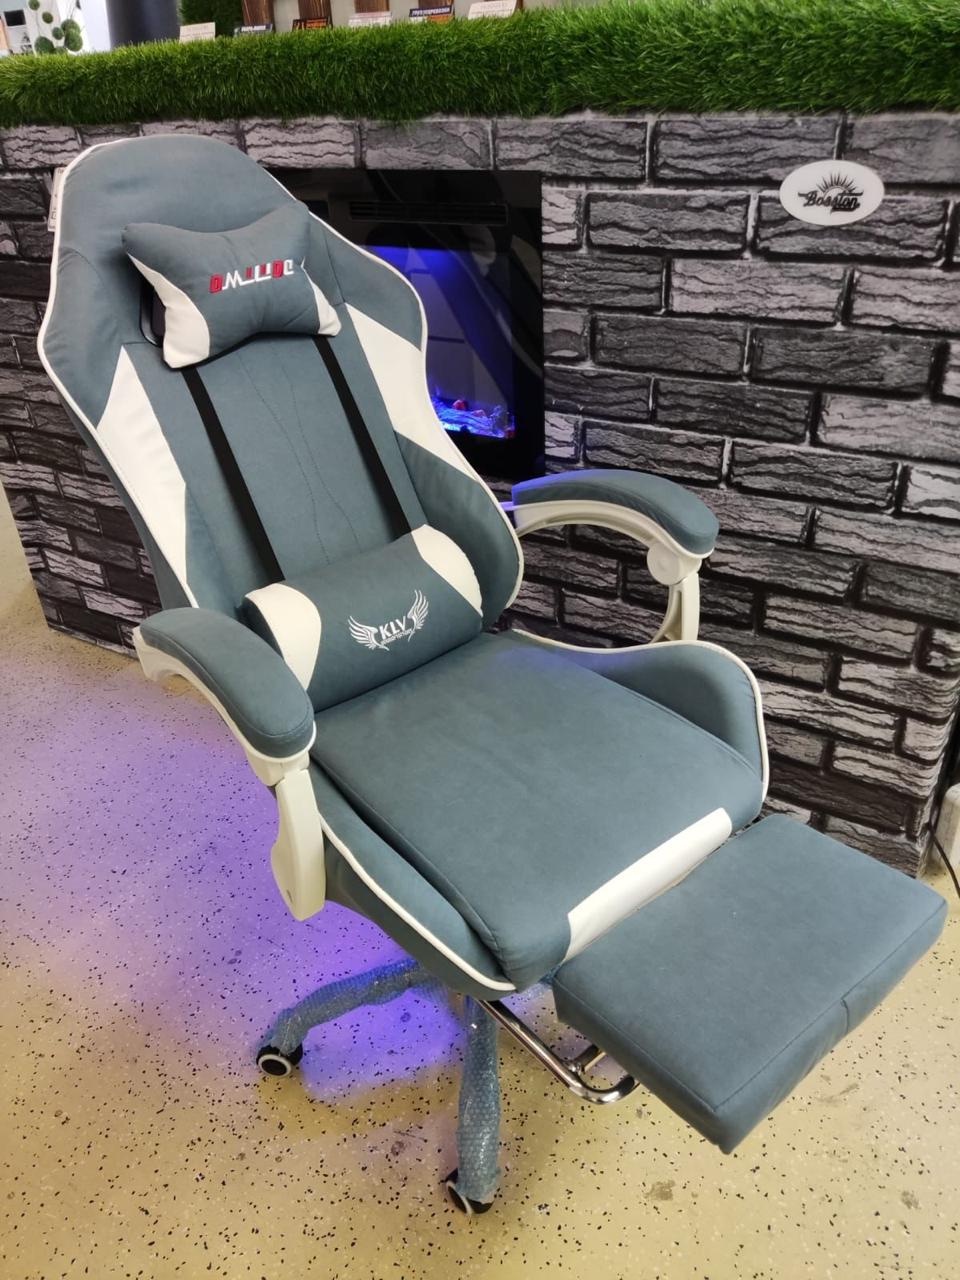 Компьютерное кресло - 14 000 ₽, заказать онлайн.